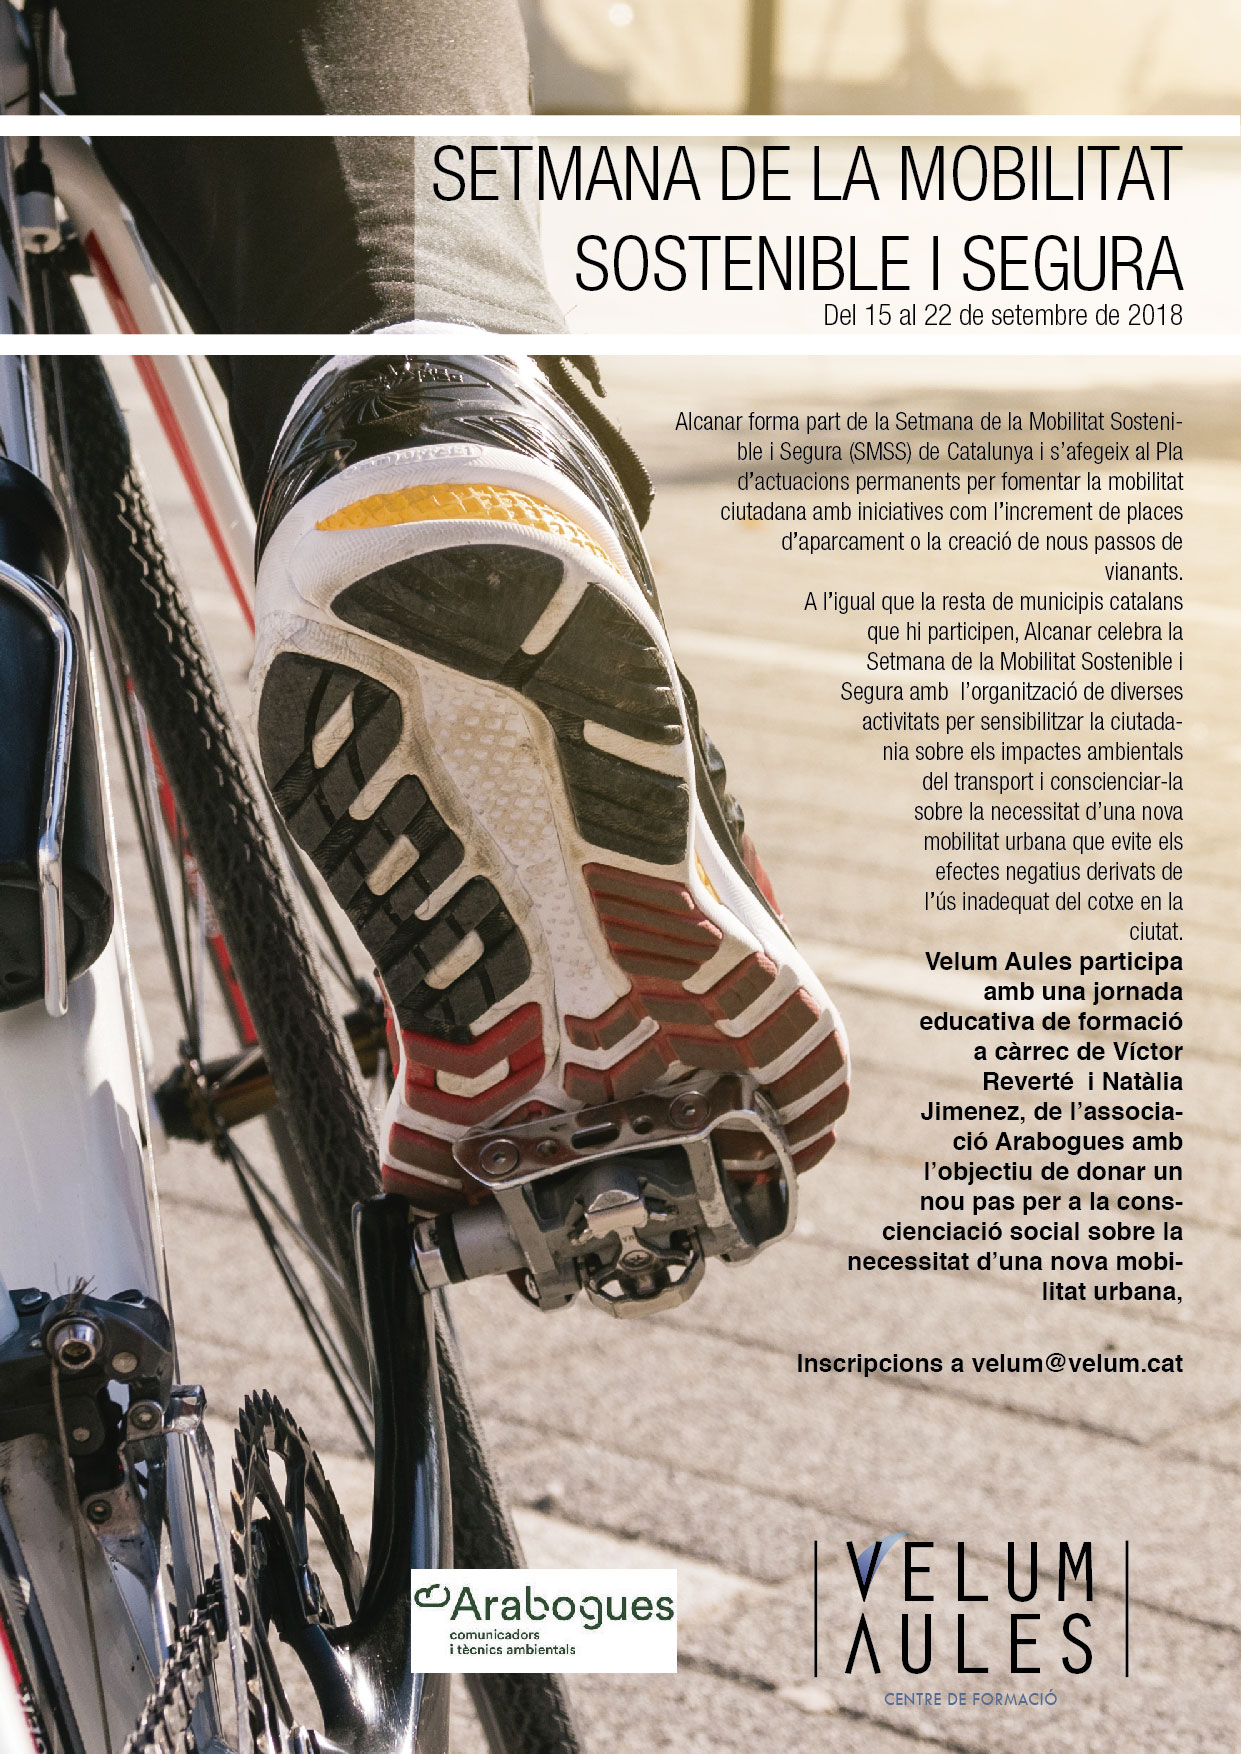 You are currently viewing Setmana de la mobilitat sostenible.